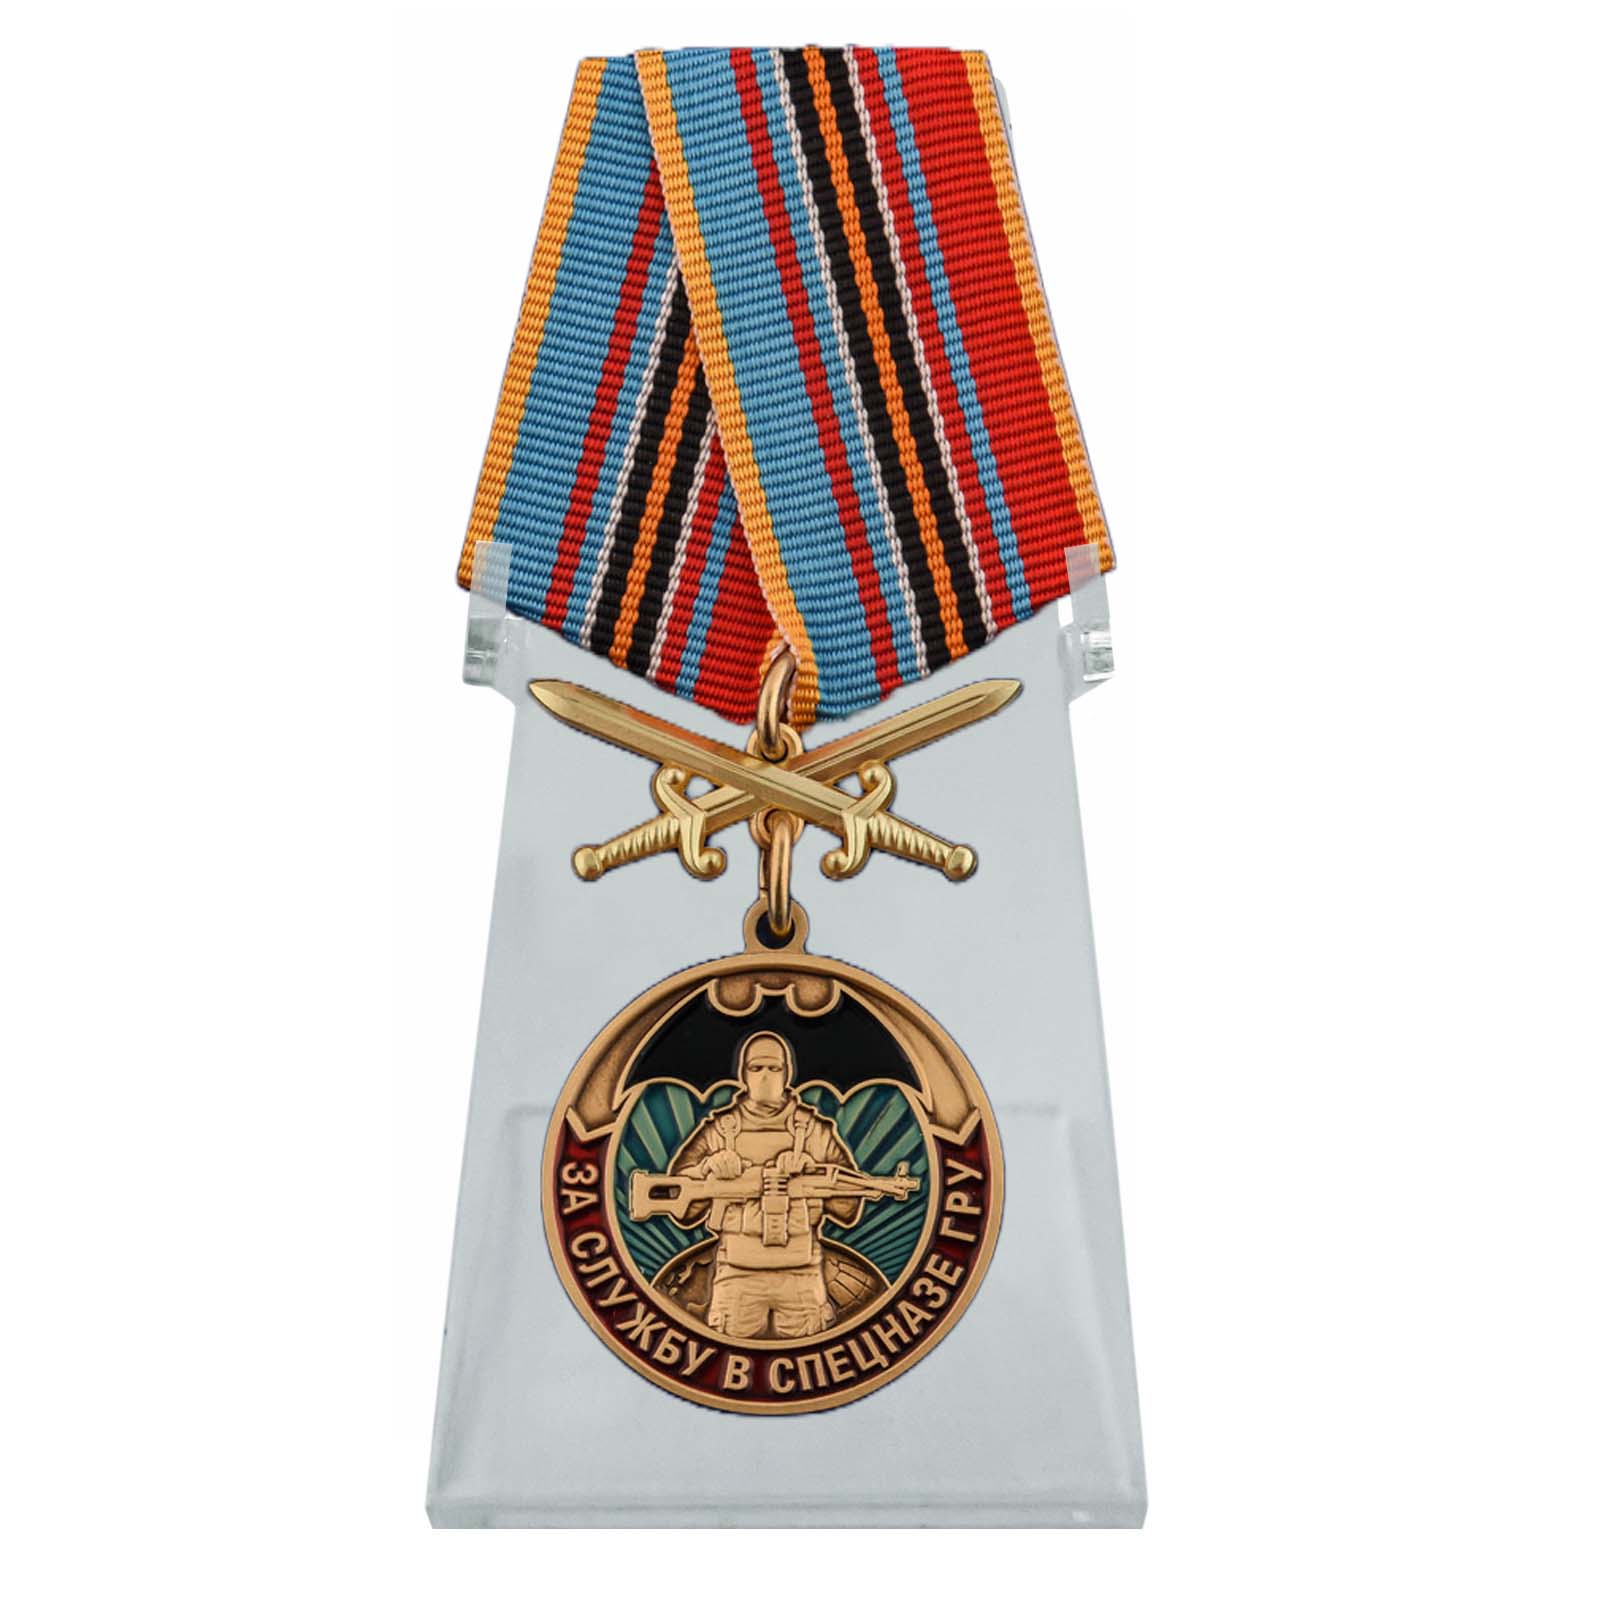 Медаль "За службу в Спецназе ГРУ" на подставке